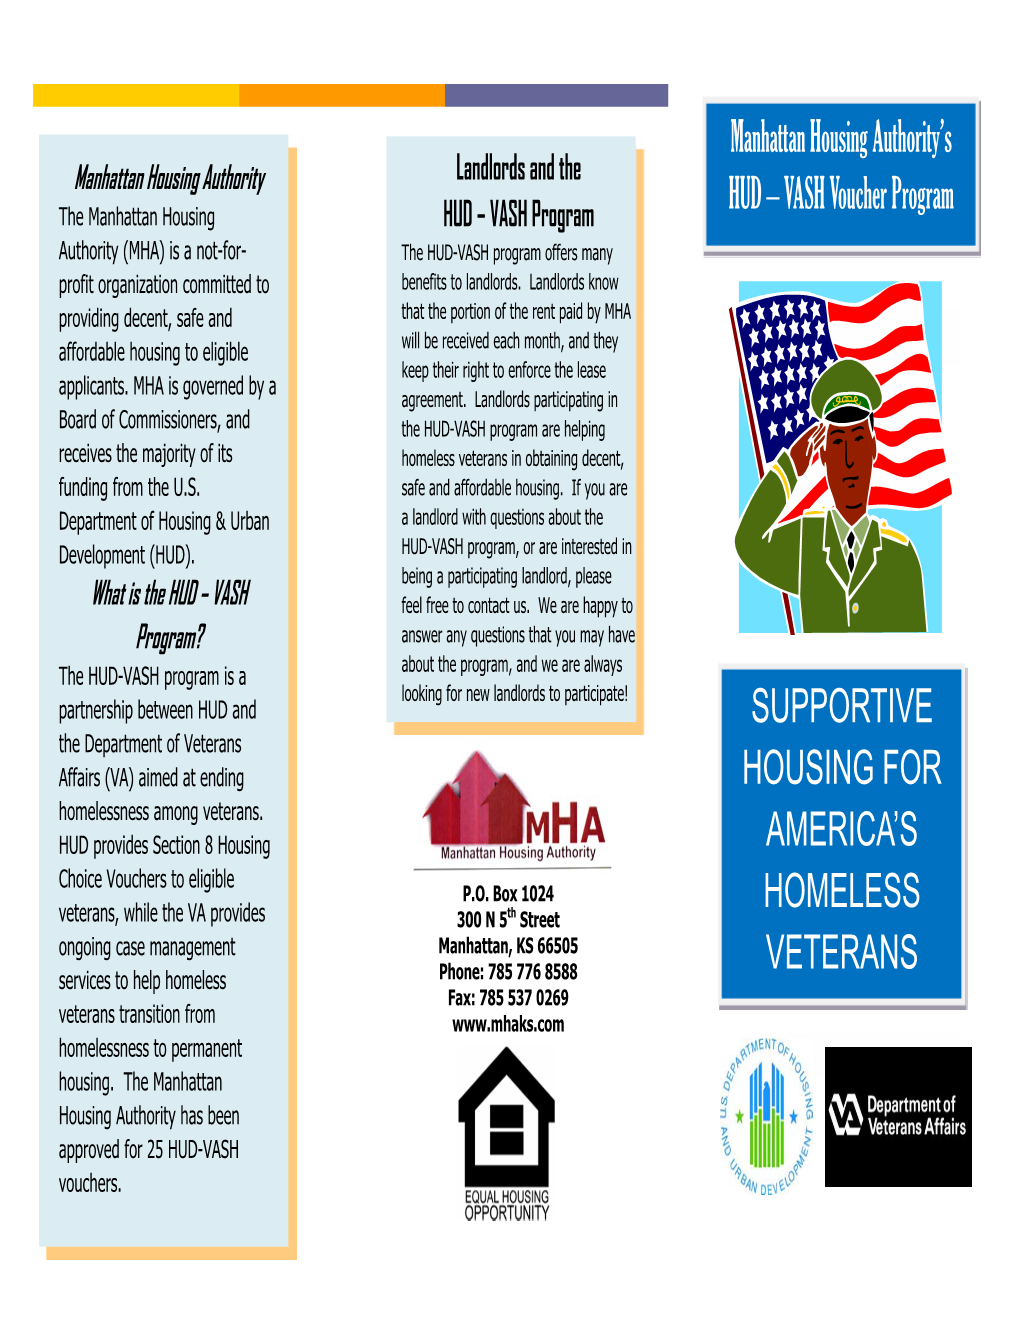 Supportive Housing for America's Homeless Veterans